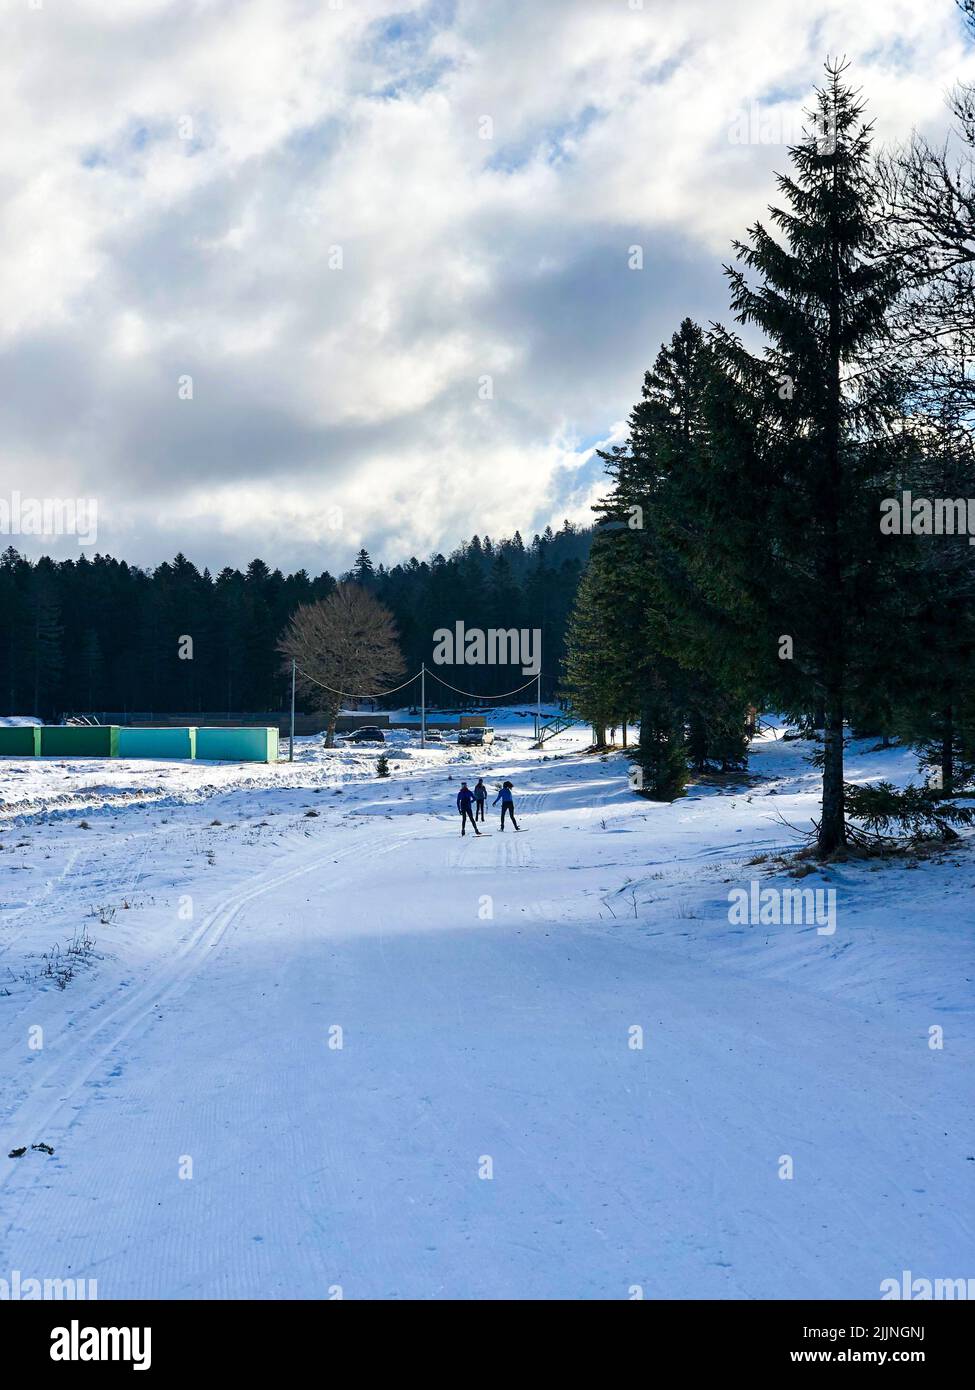 Una vista posteriore verticale delle persone che sciano nella foresta in una fredda giornata invernale Foto Stock